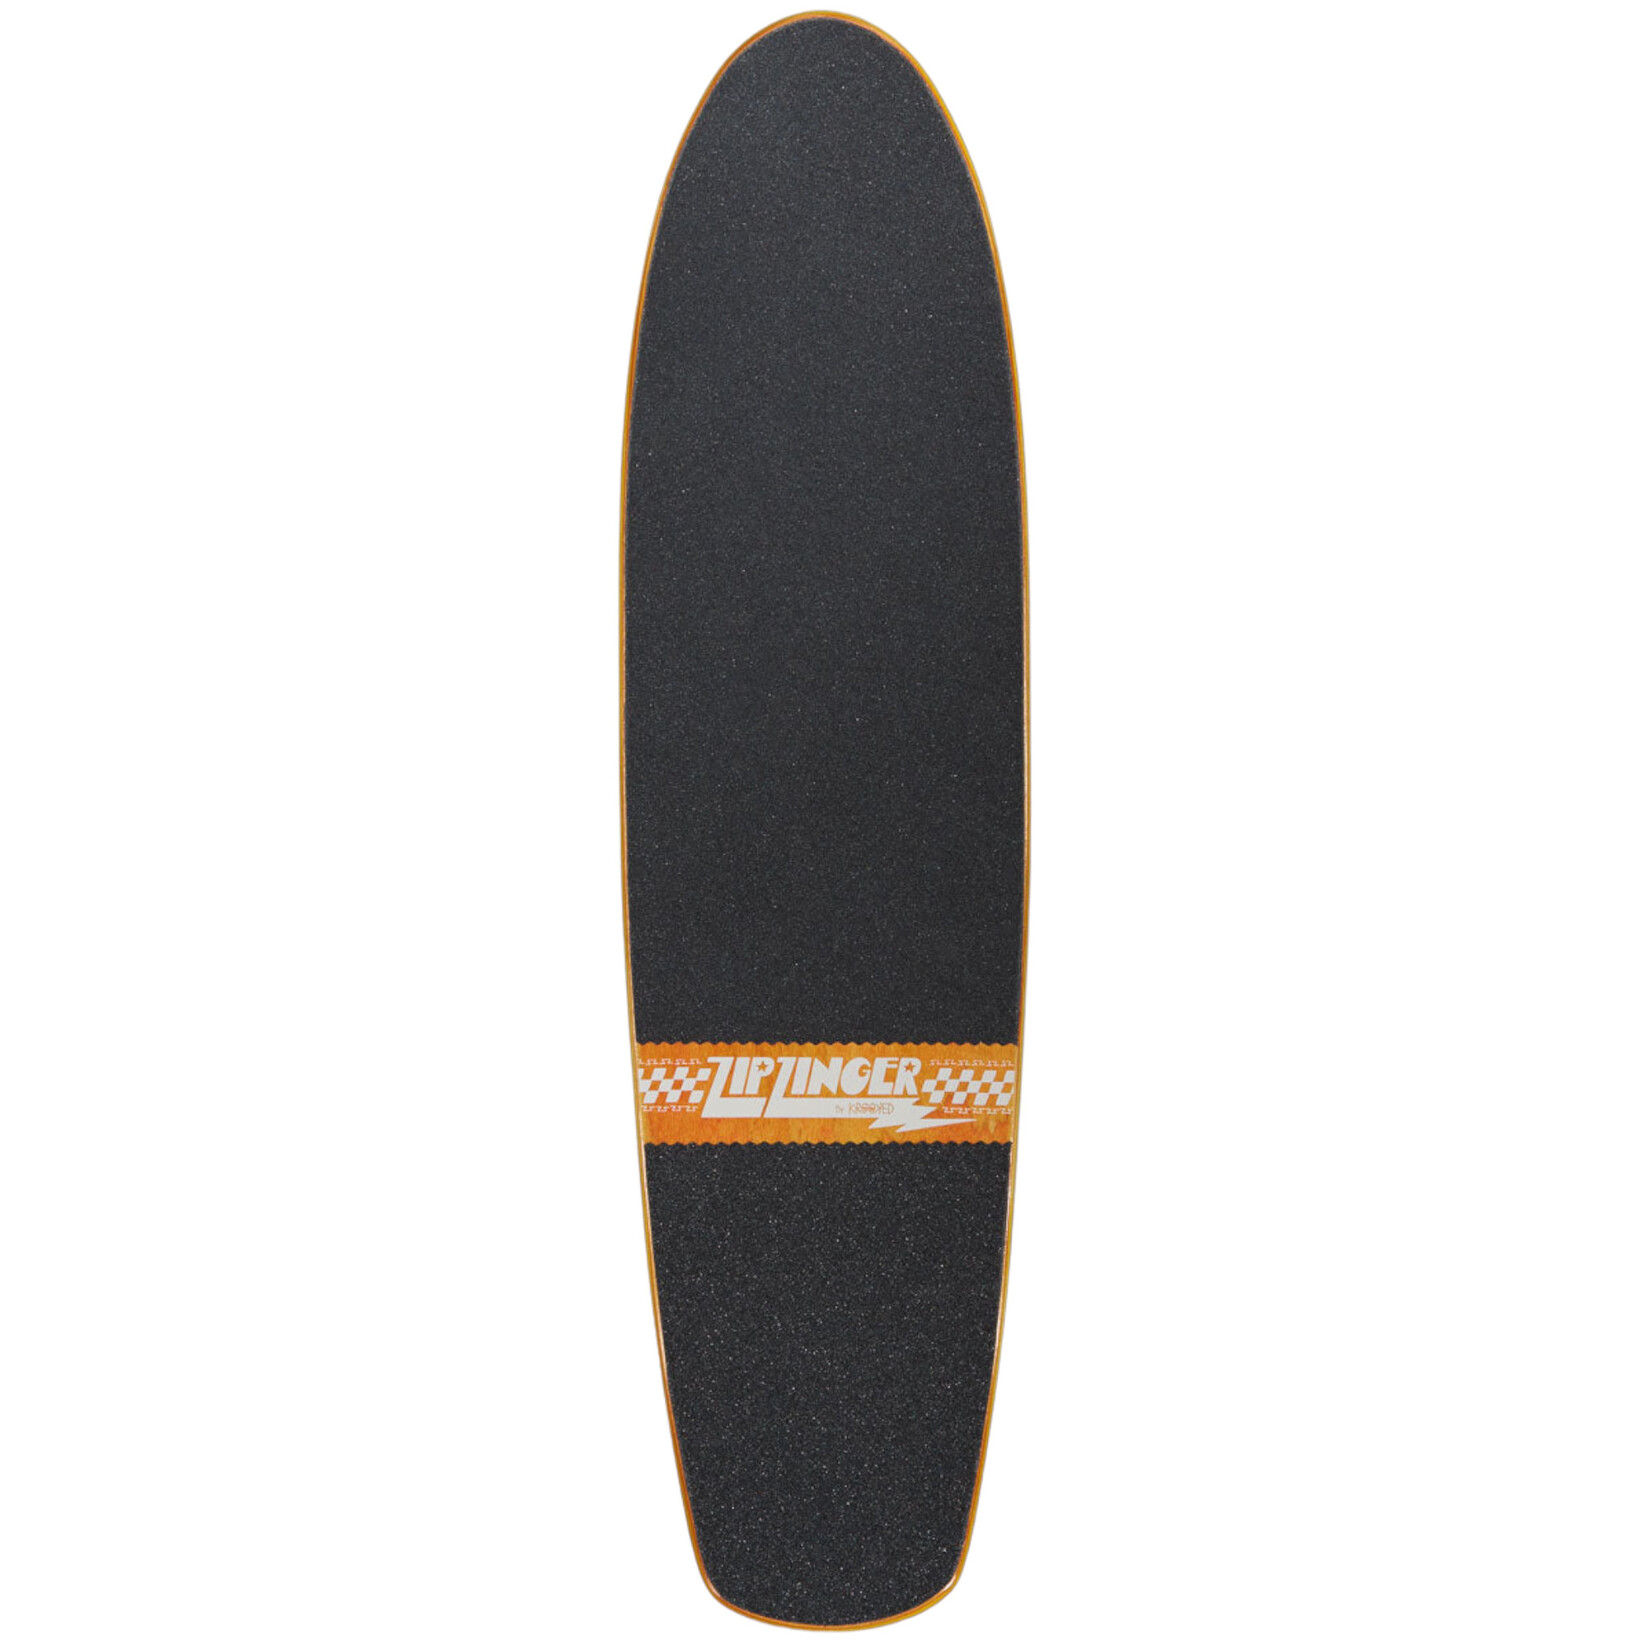 Krooked Skateboards Krooked Zip Zinger OG Graphic Recolor Deck 7.75”